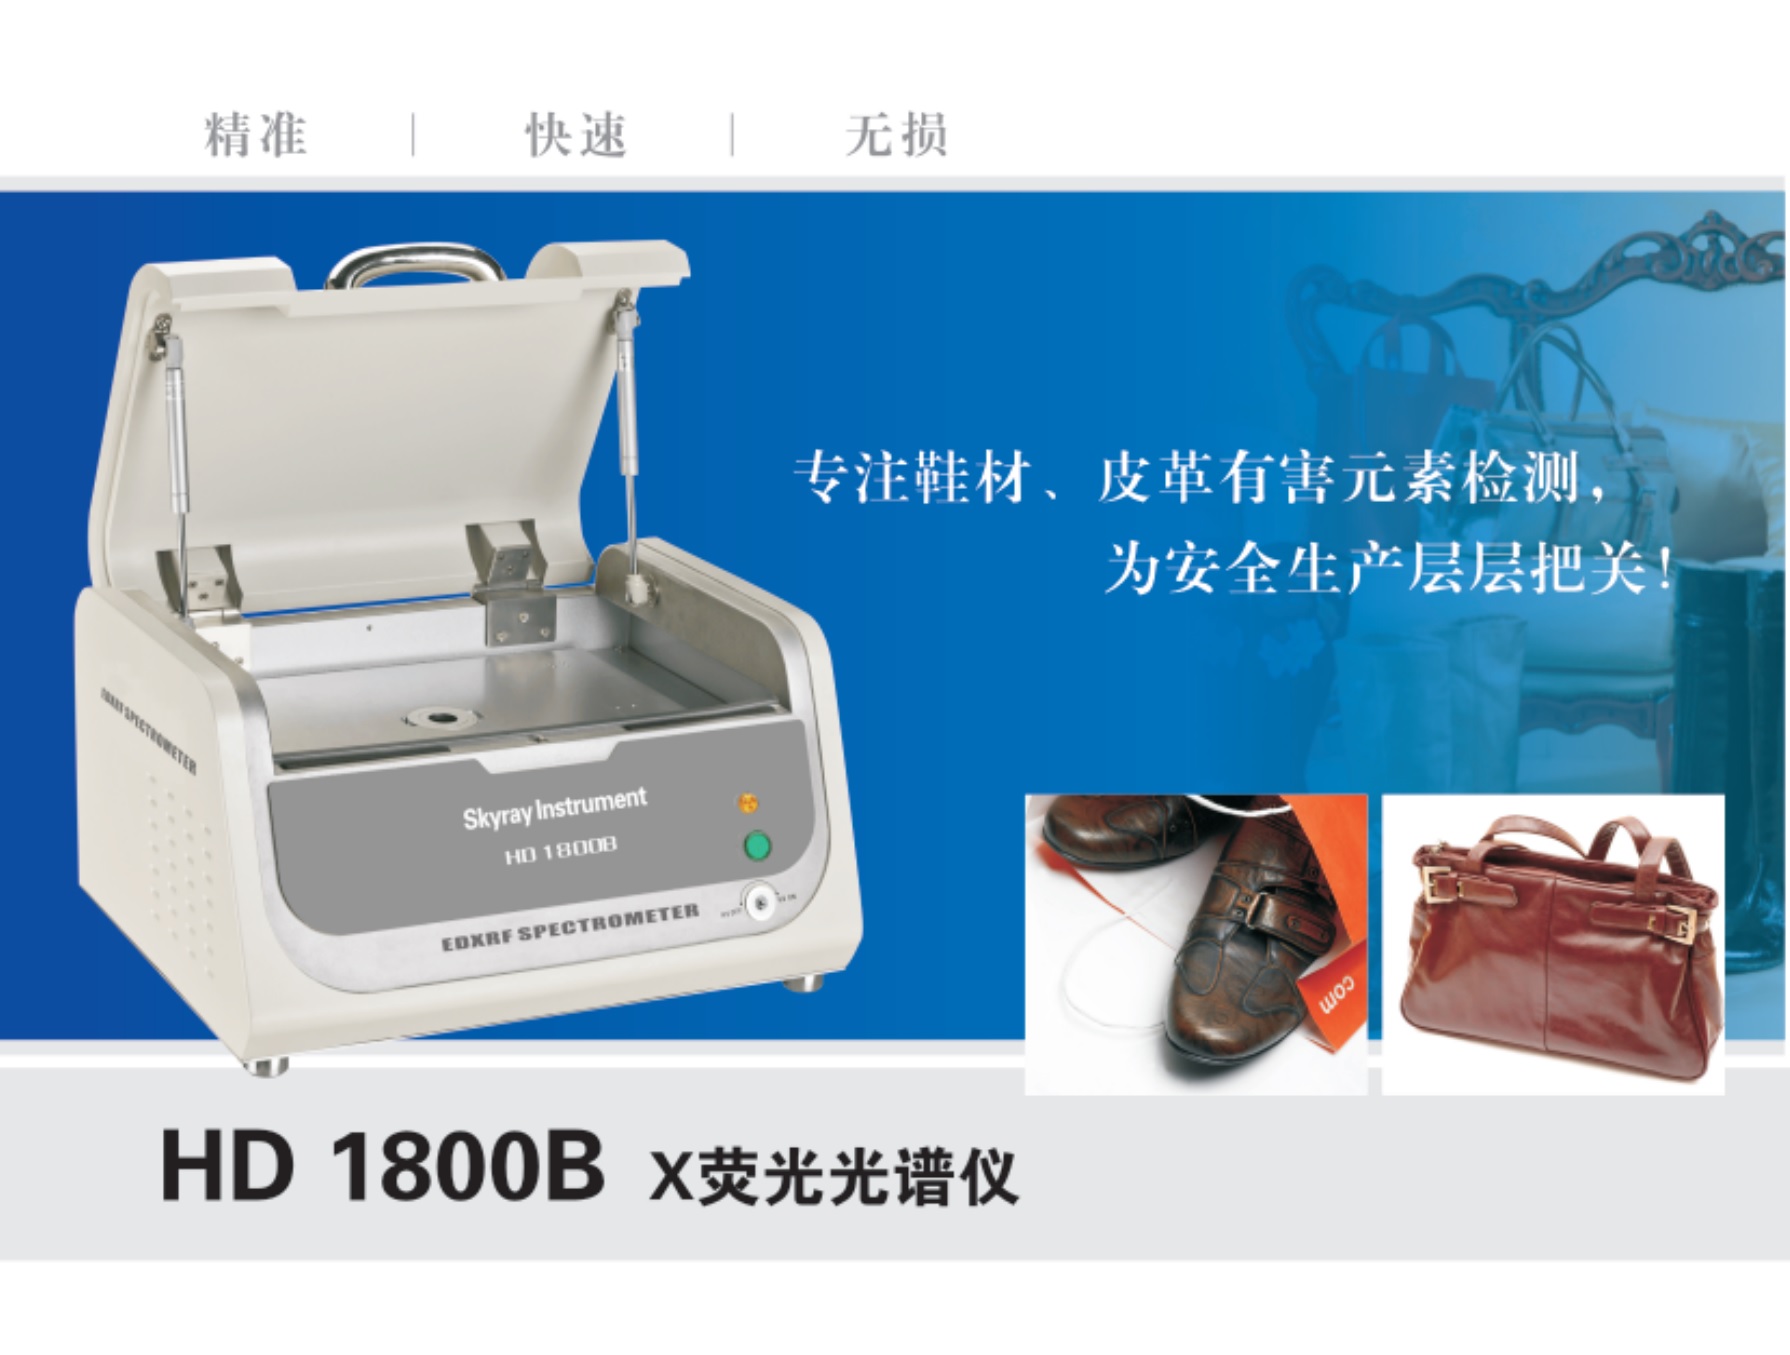 天瑞仪器 HD 1800-江苏天瑞仪器股份有限公司